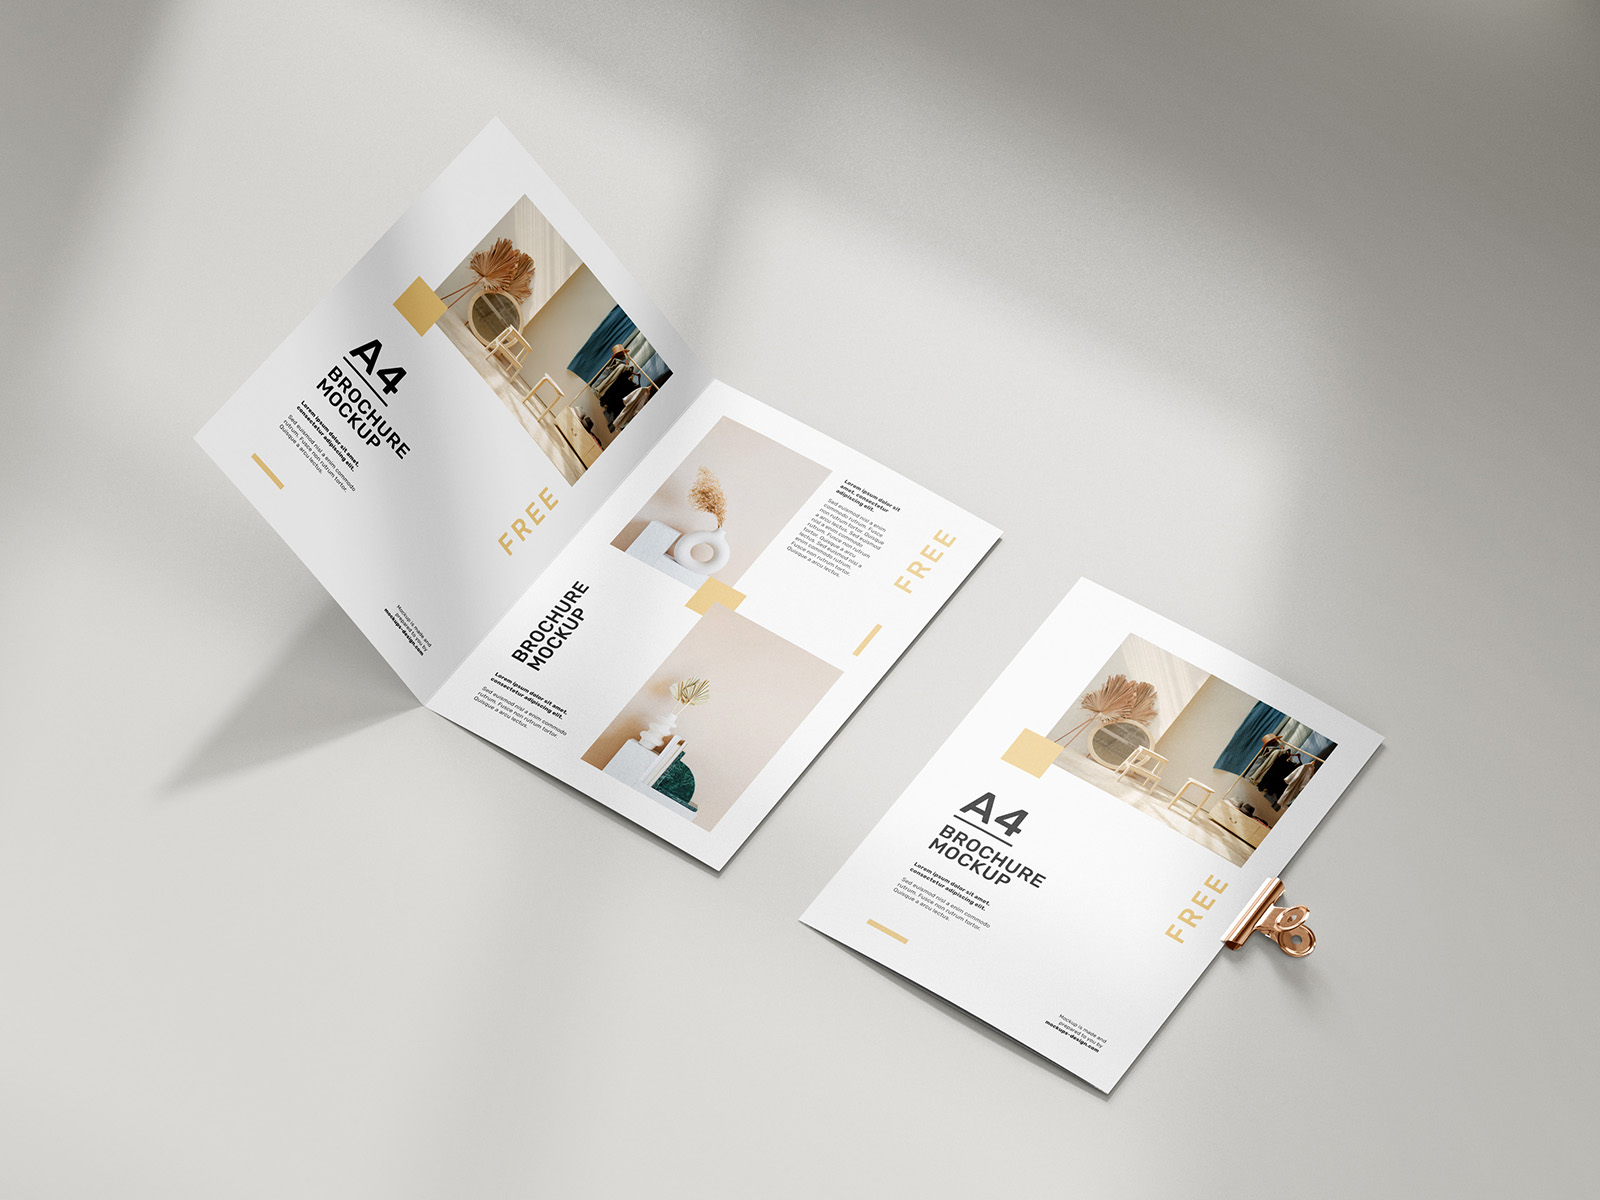 Download Free folded A4 brochure mockup - Mockups Design | Free ...